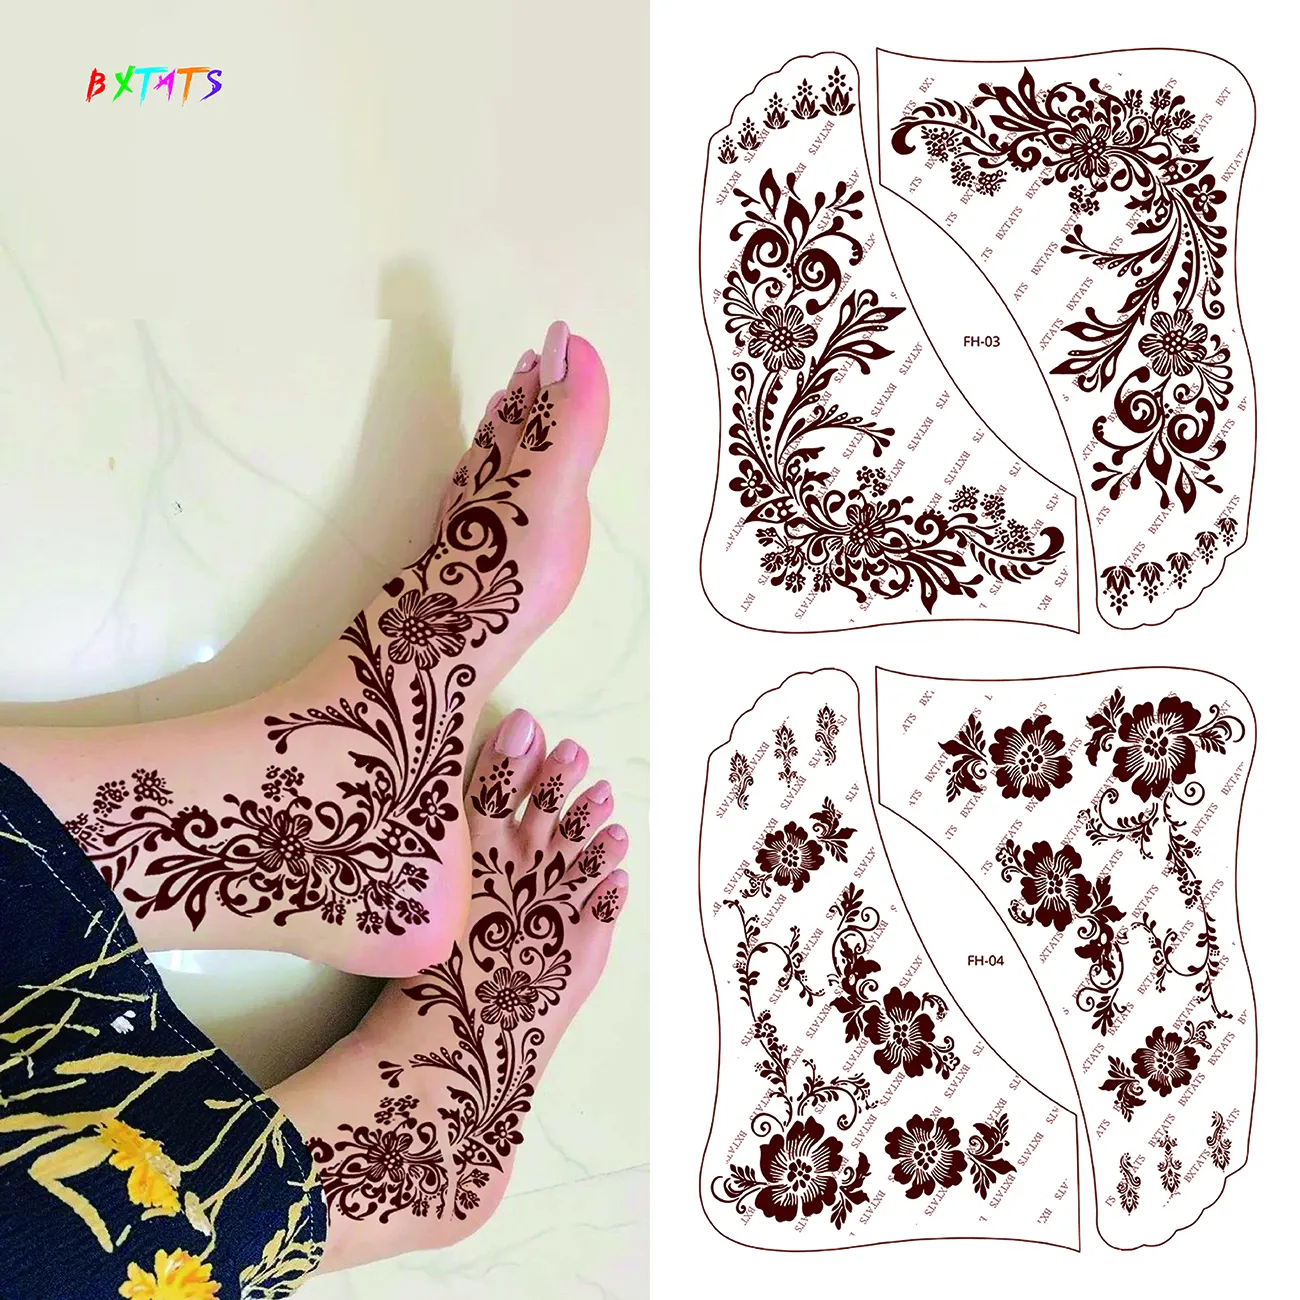 Créations distinctives Mehndi Art pieds tatouage au henné dentelle indienne autocollants de tatouage étanche Mandala pied henné conceptions en marron